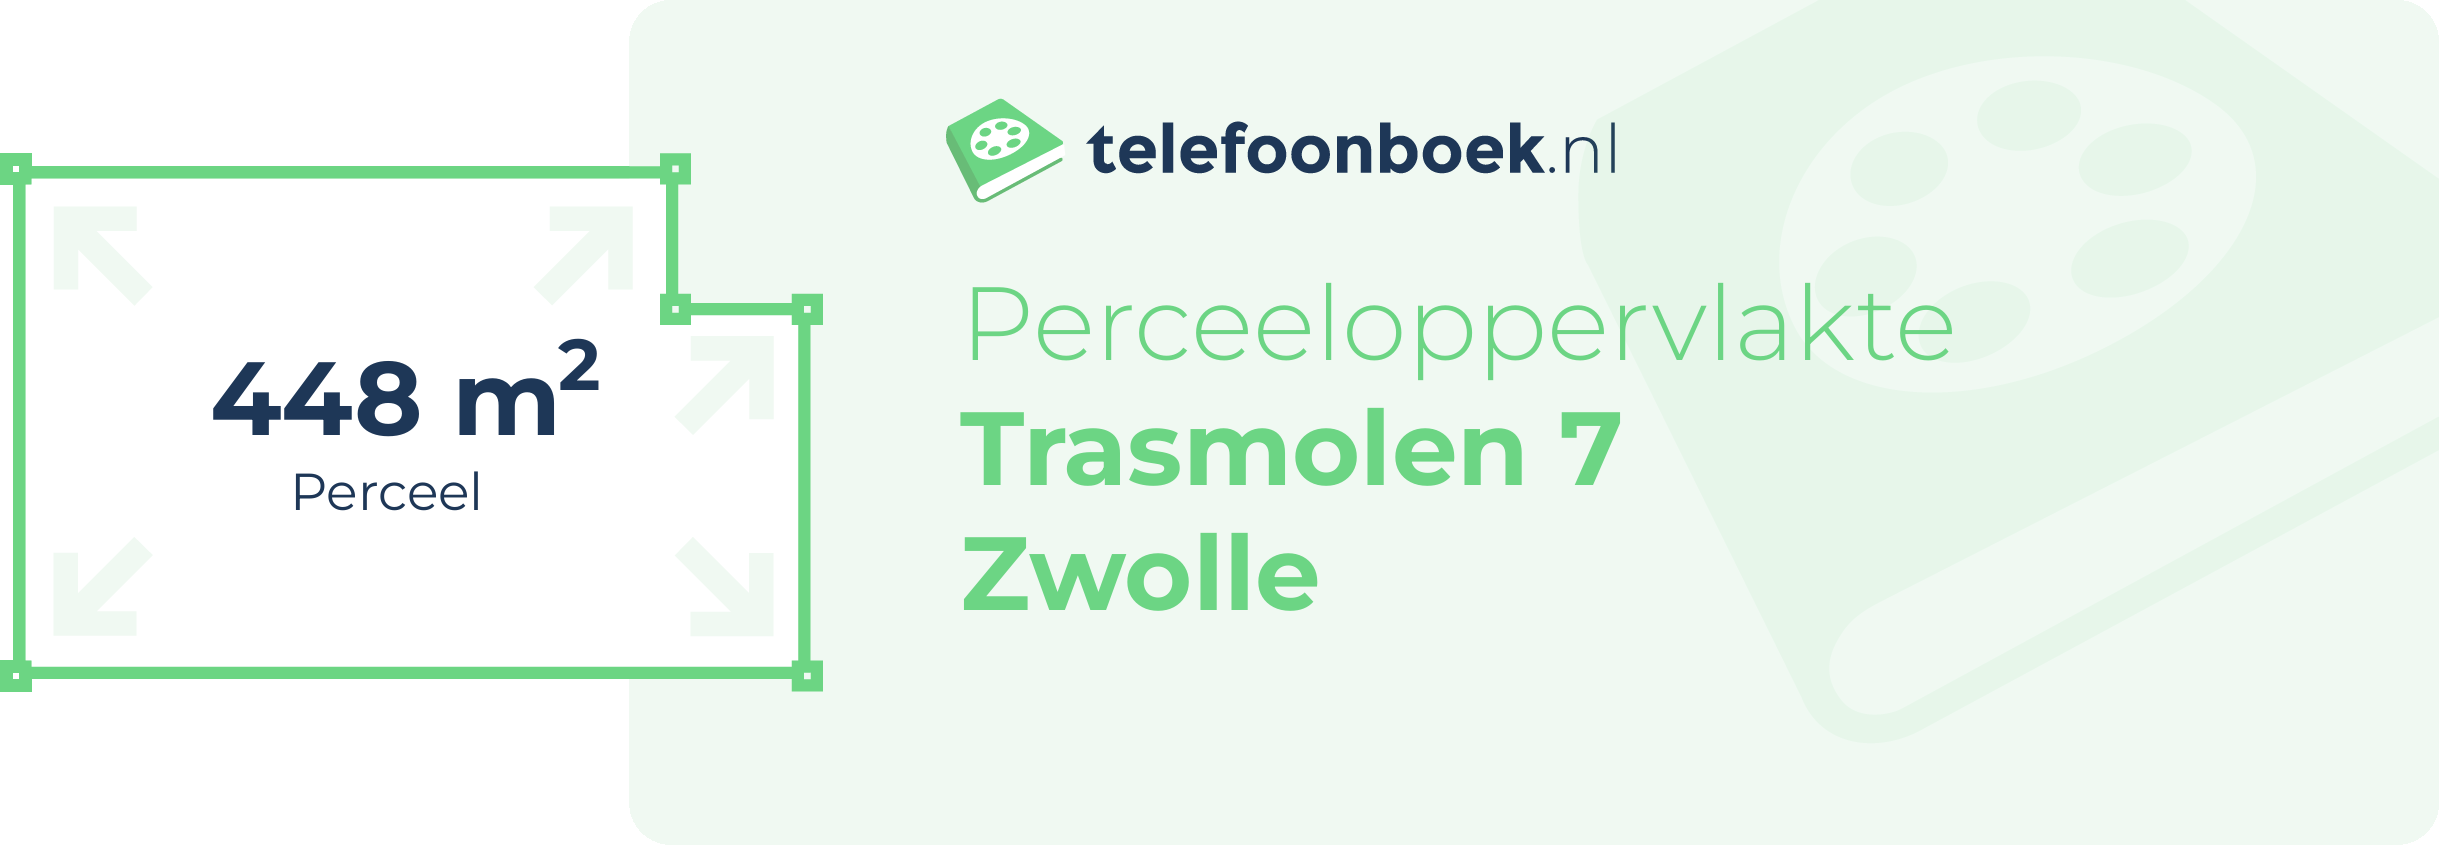 Perceeloppervlakte Trasmolen 7 Zwolle